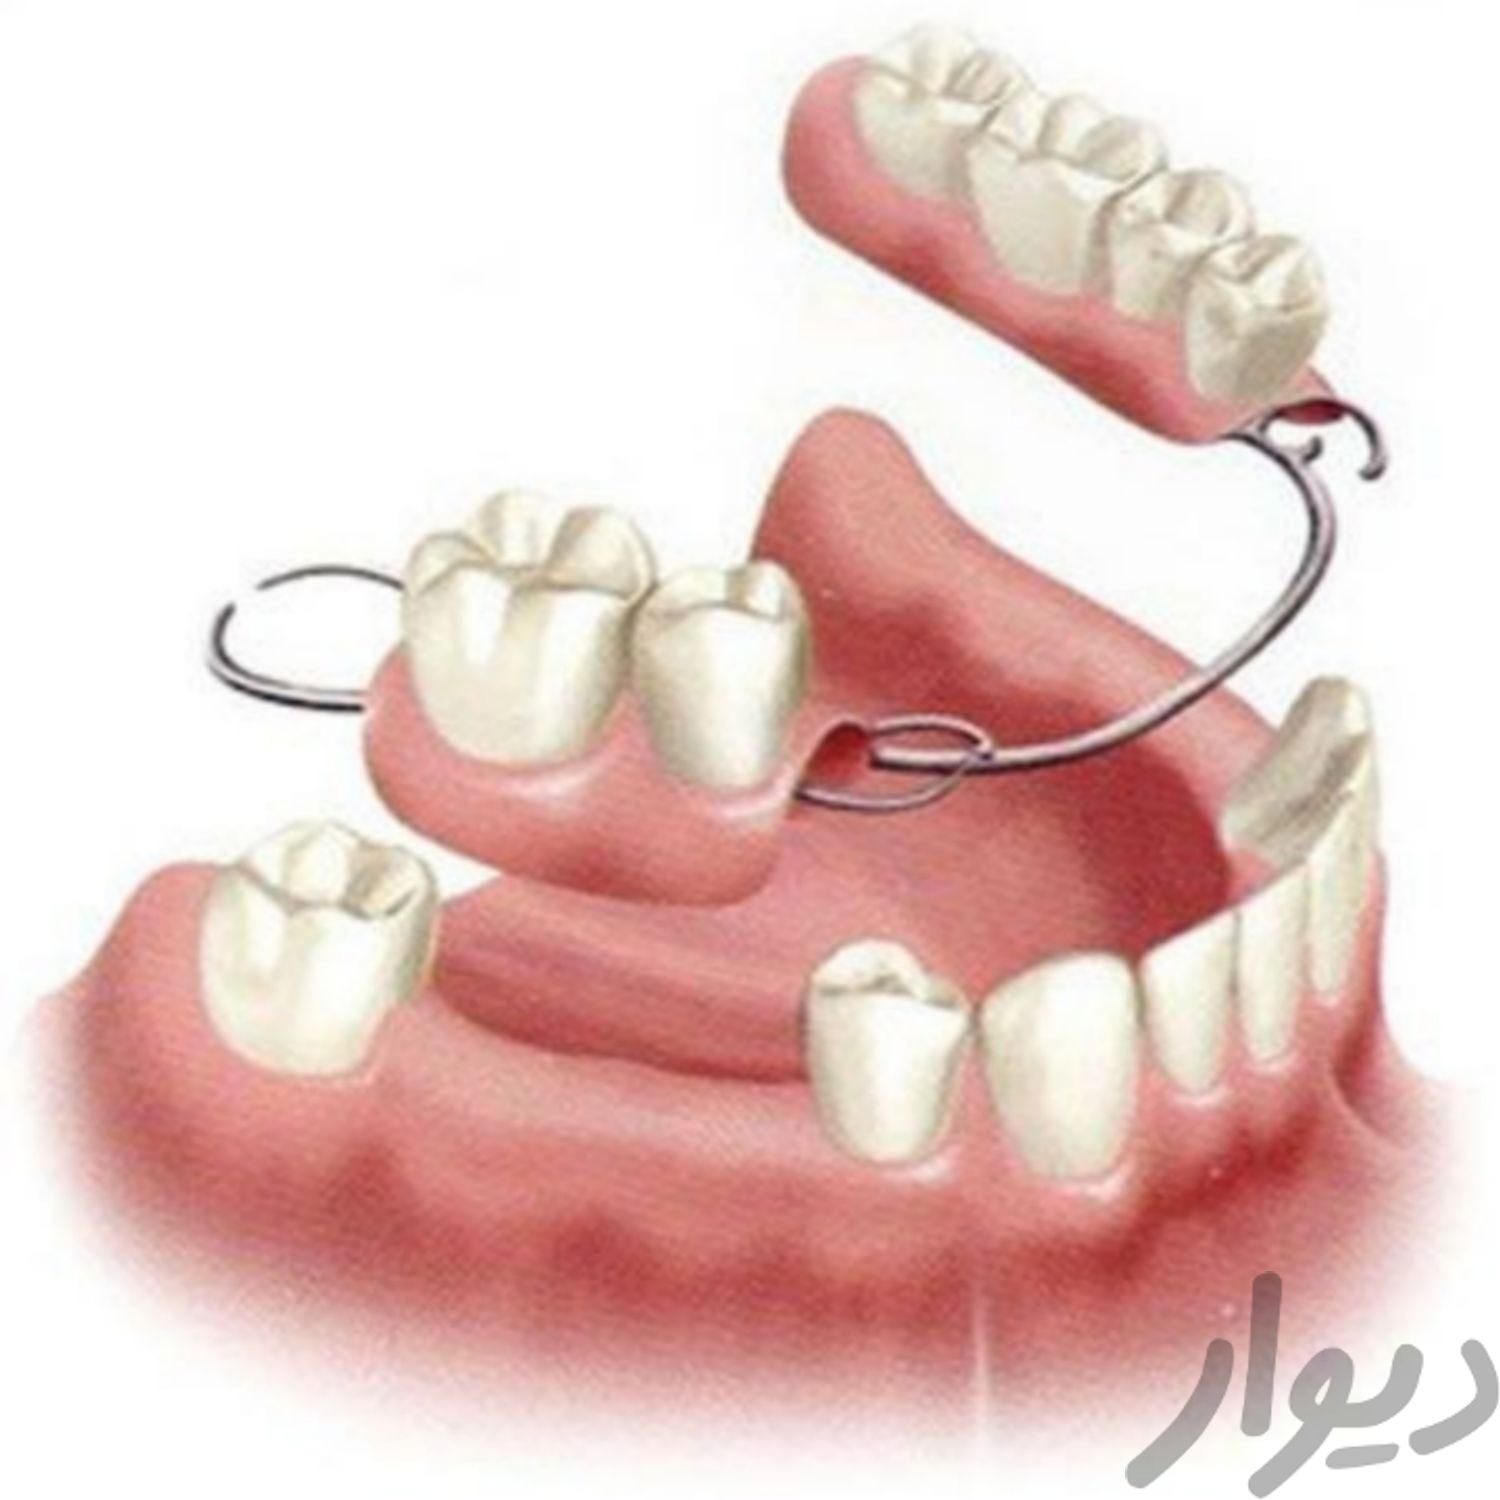 خدمات تخصصی دندانپزشکی با پذیرش بیمه های تکمیلی